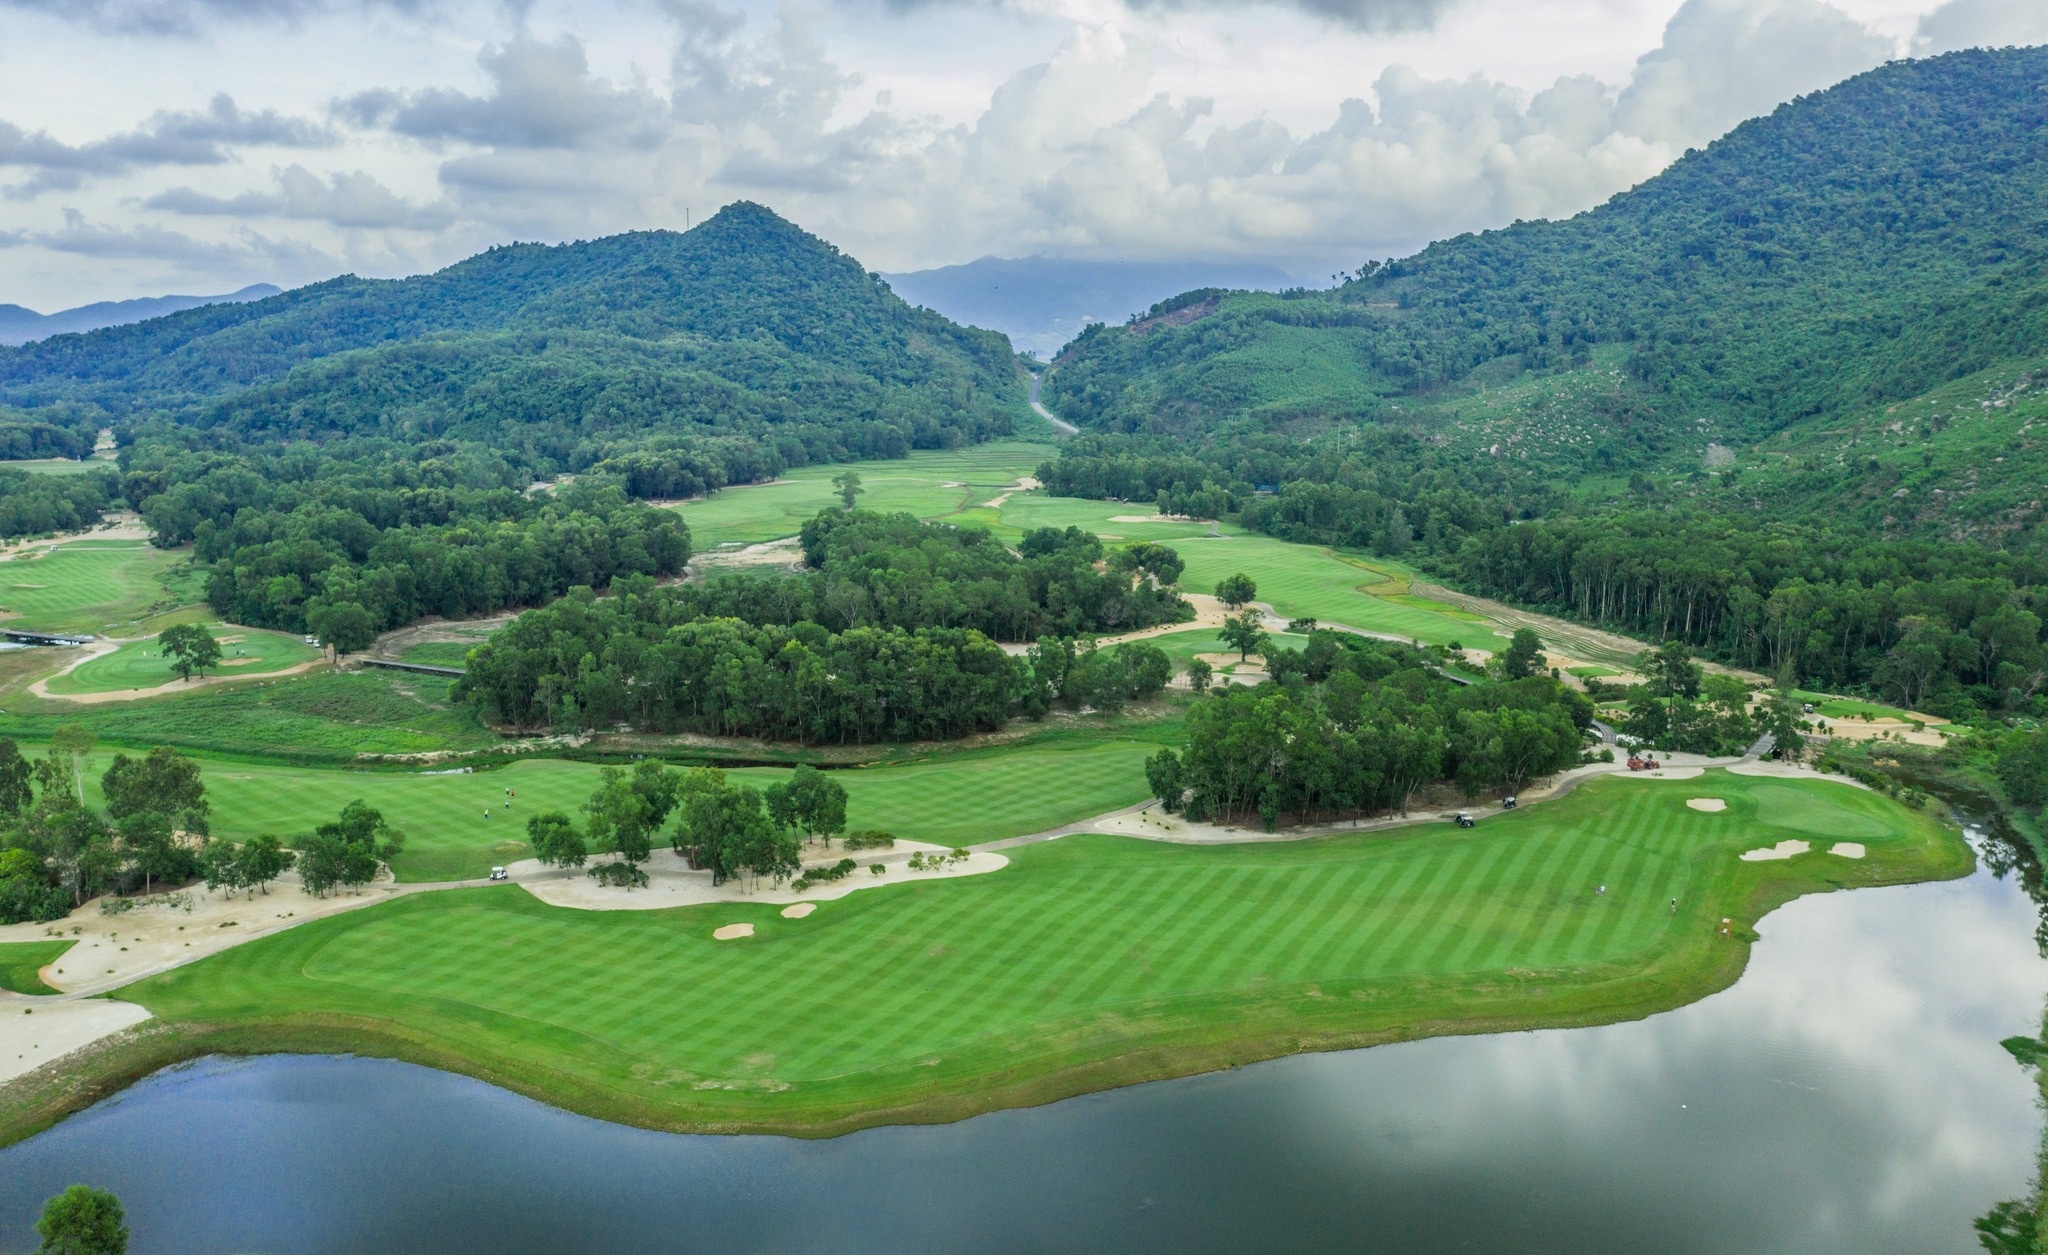 UBND Thừa Thiên Huế vừa chấp thuận chủ trương đầu tư sân golf Lộc Bình 